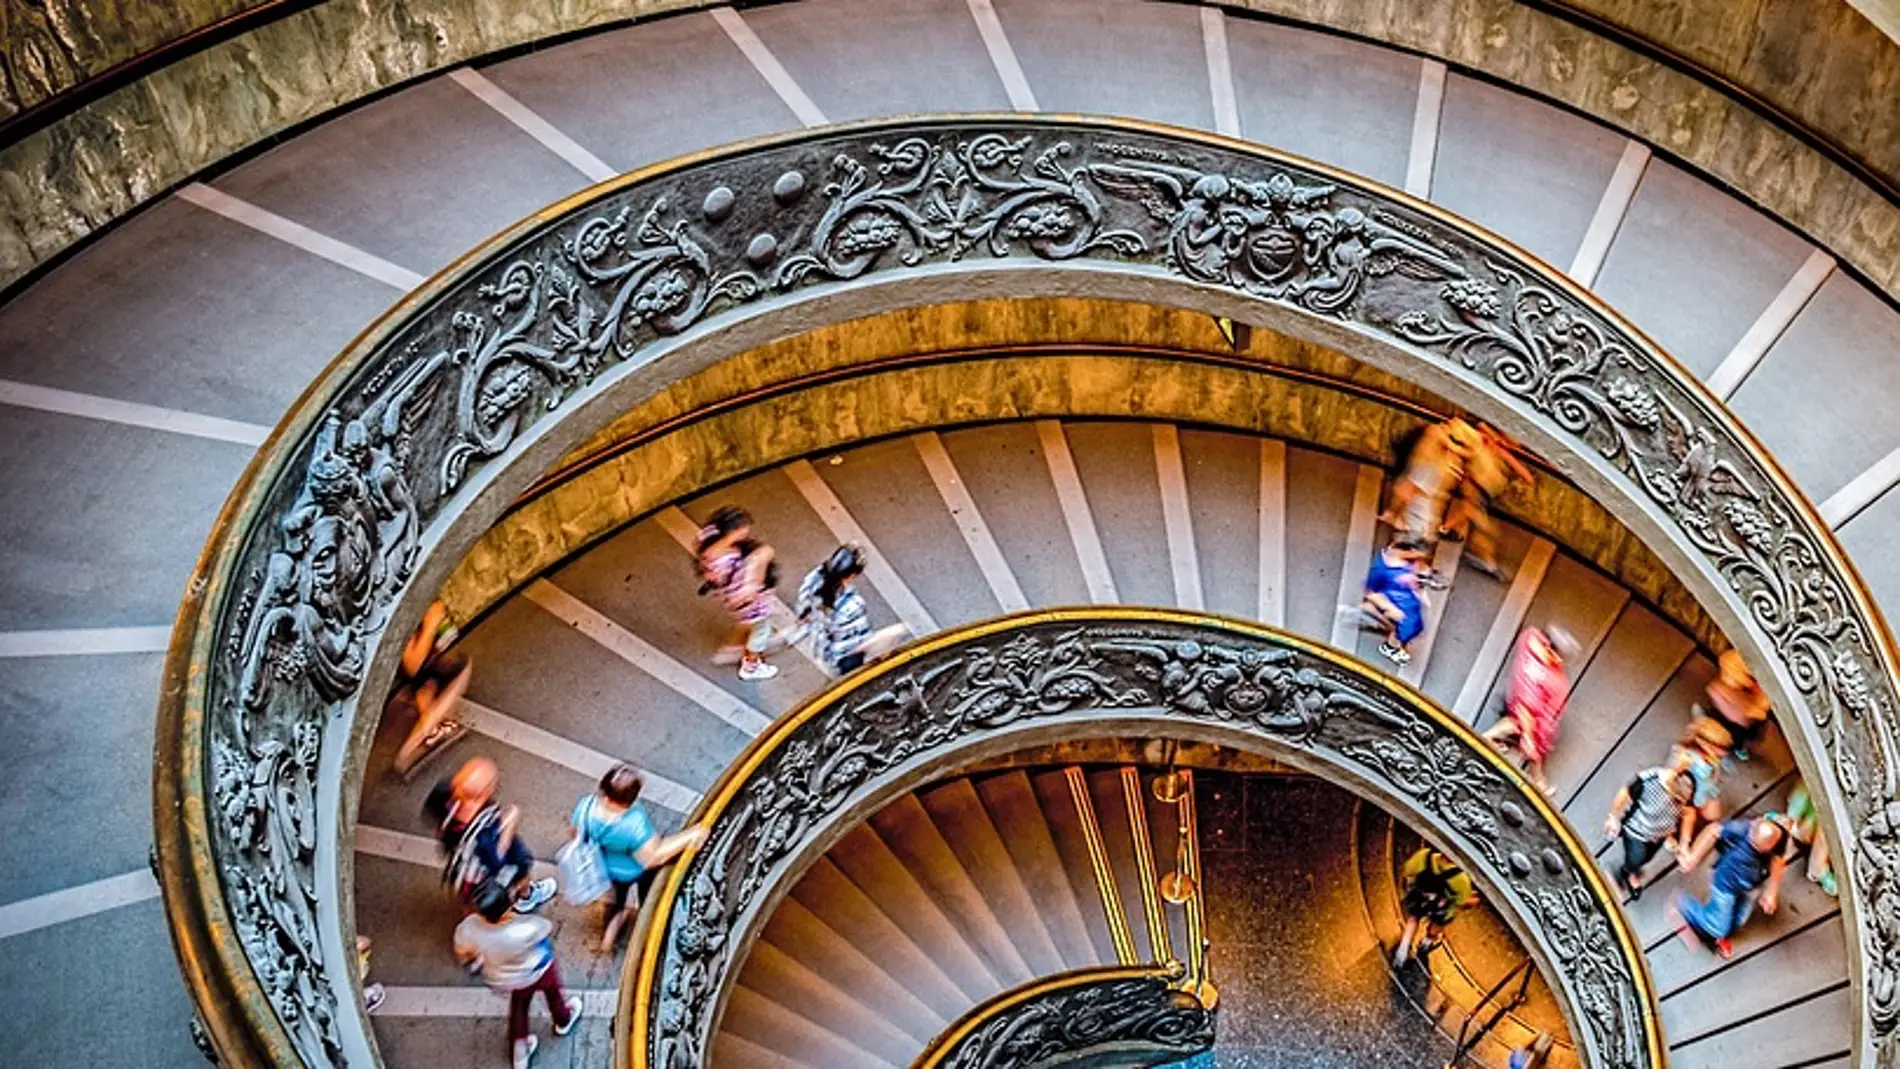 Escalinata del Vaticano